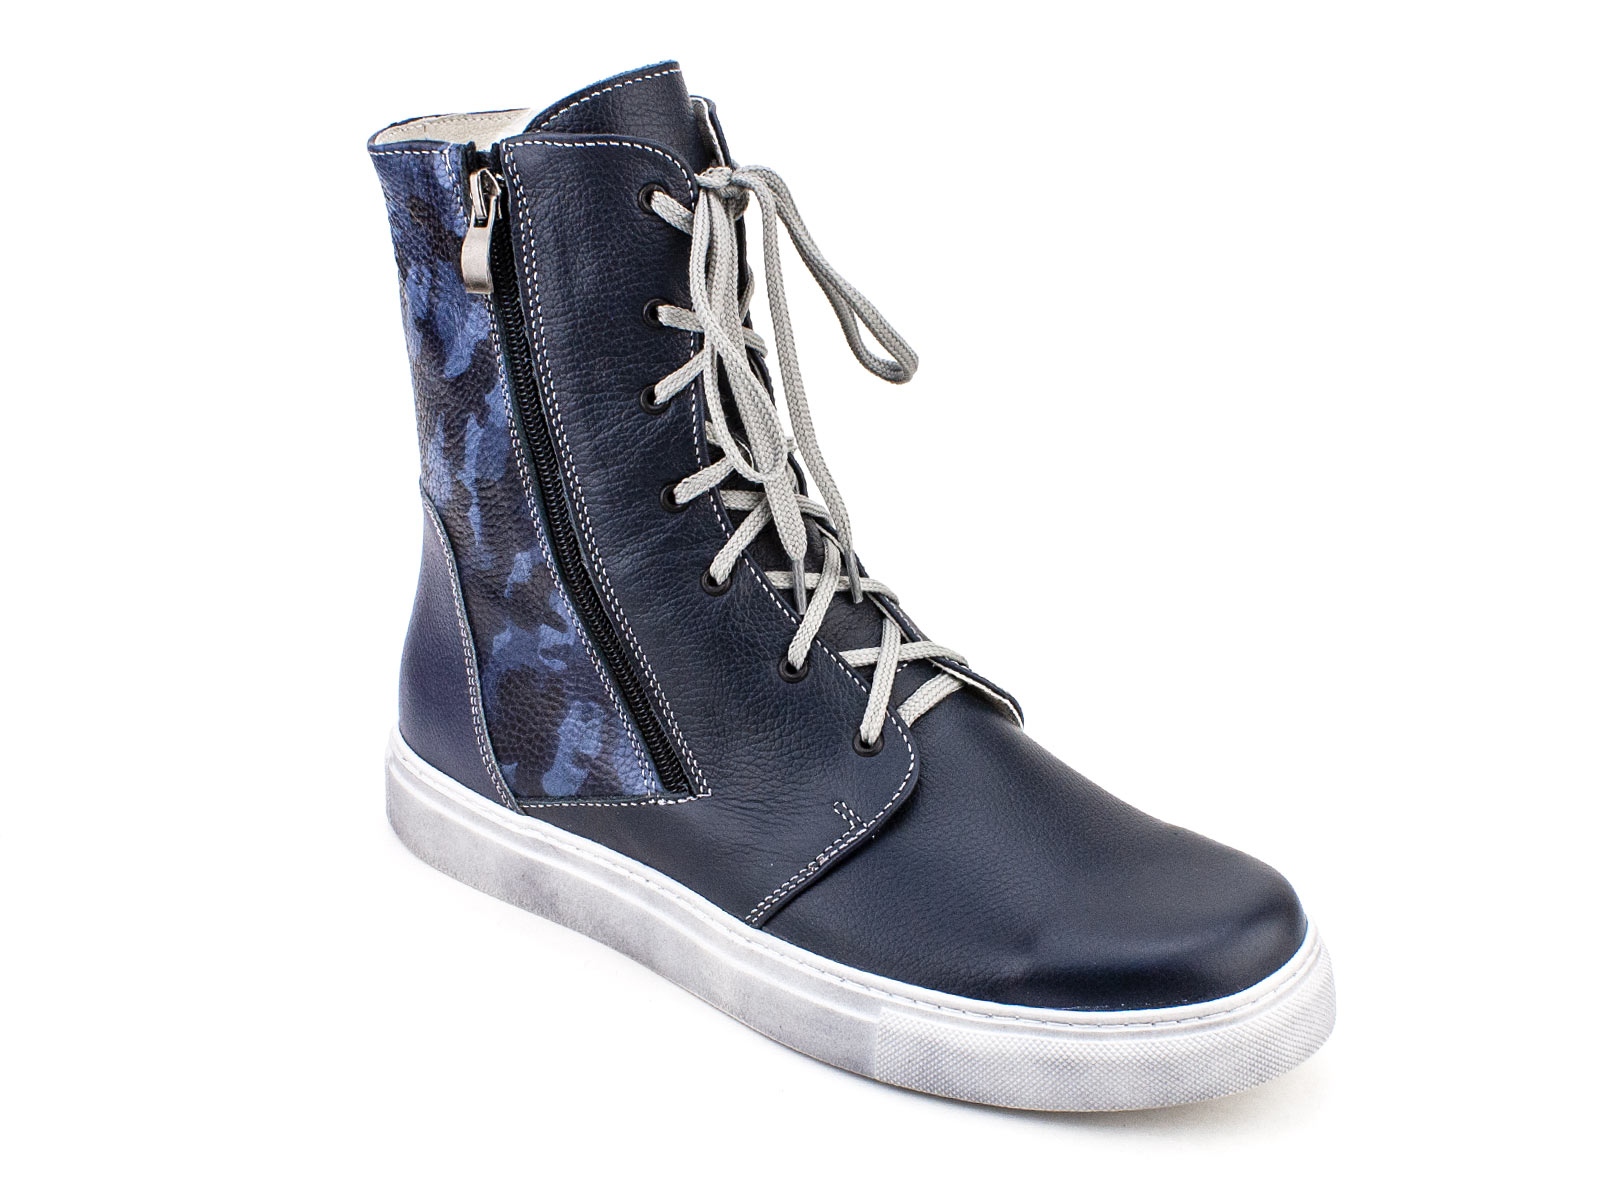 306БР Аквелла (Akwella), ботинки подростковые демисезонные не утепленные  ортопедические с высоким берцем, кожа, синий, камуфляж